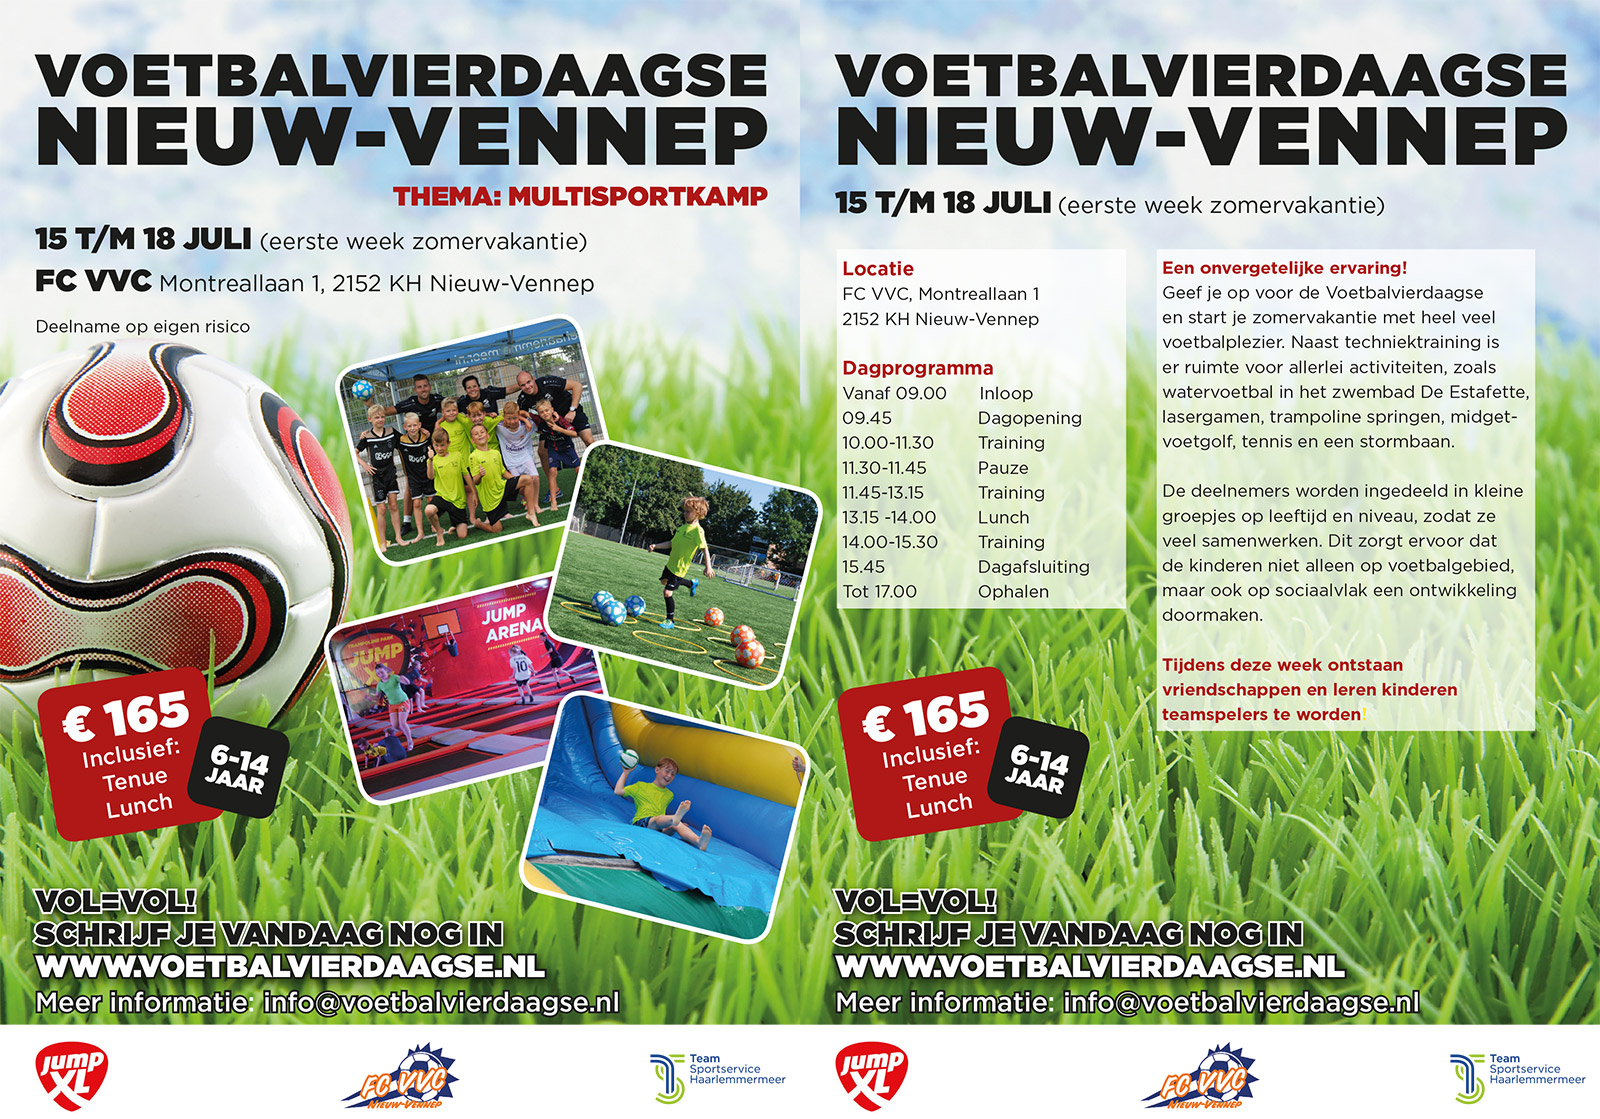 Sport Service Haarlemmermeer - Voetbal Vierdaagse